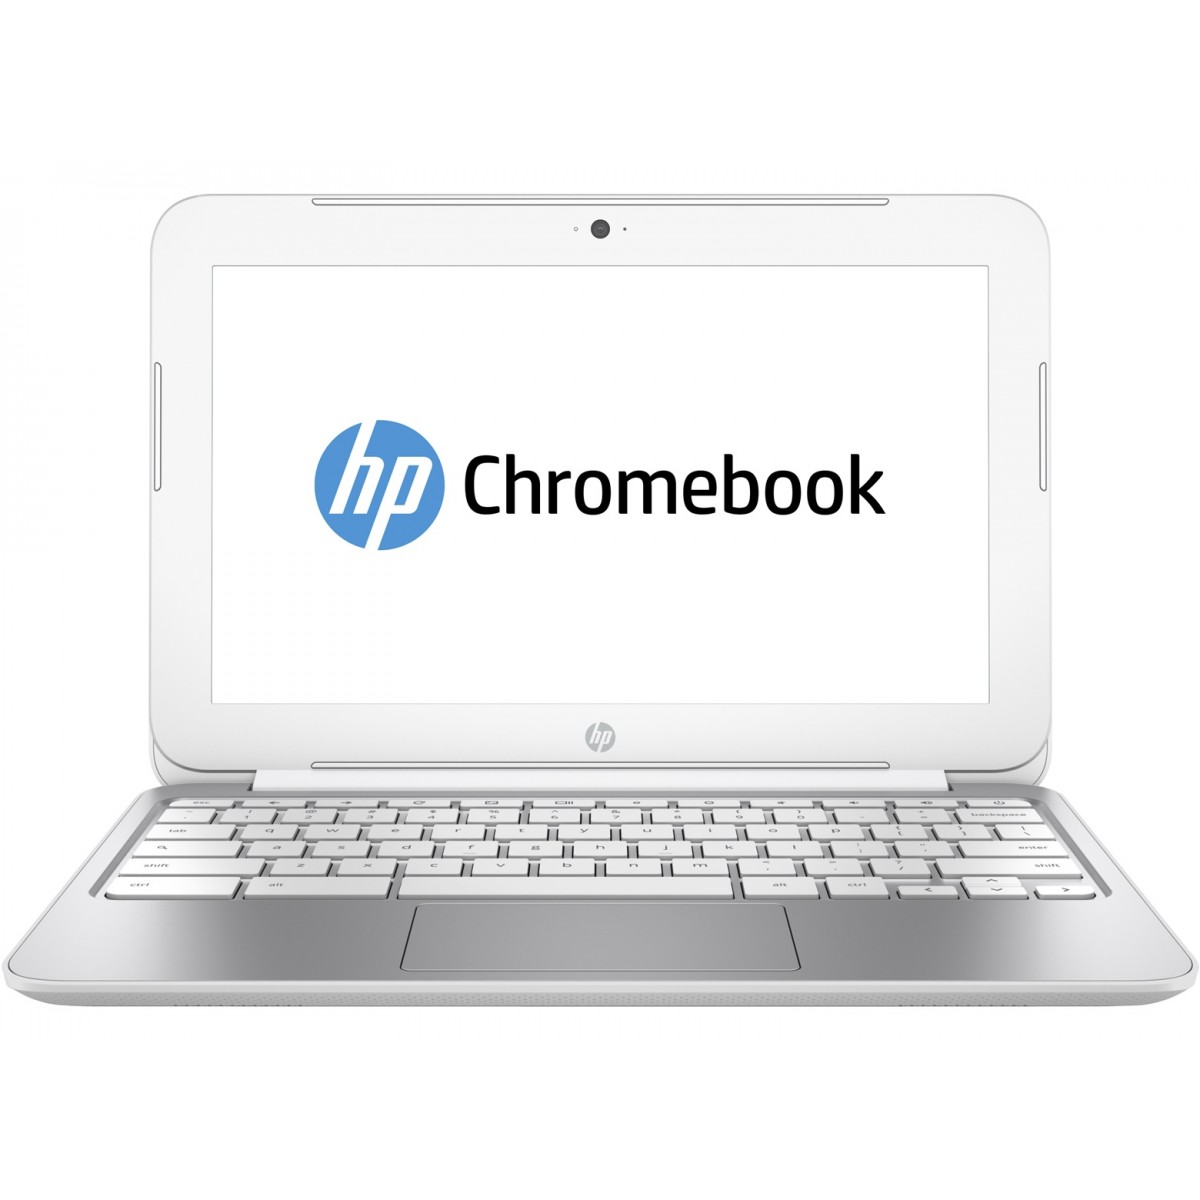 Laptop HP Chromebook 11-2100nd, Intel Celeron N2840 2.16GHz, 2GB DDR3, 16GB SSD, 11 Inch HD, Webcam, Chrome OS